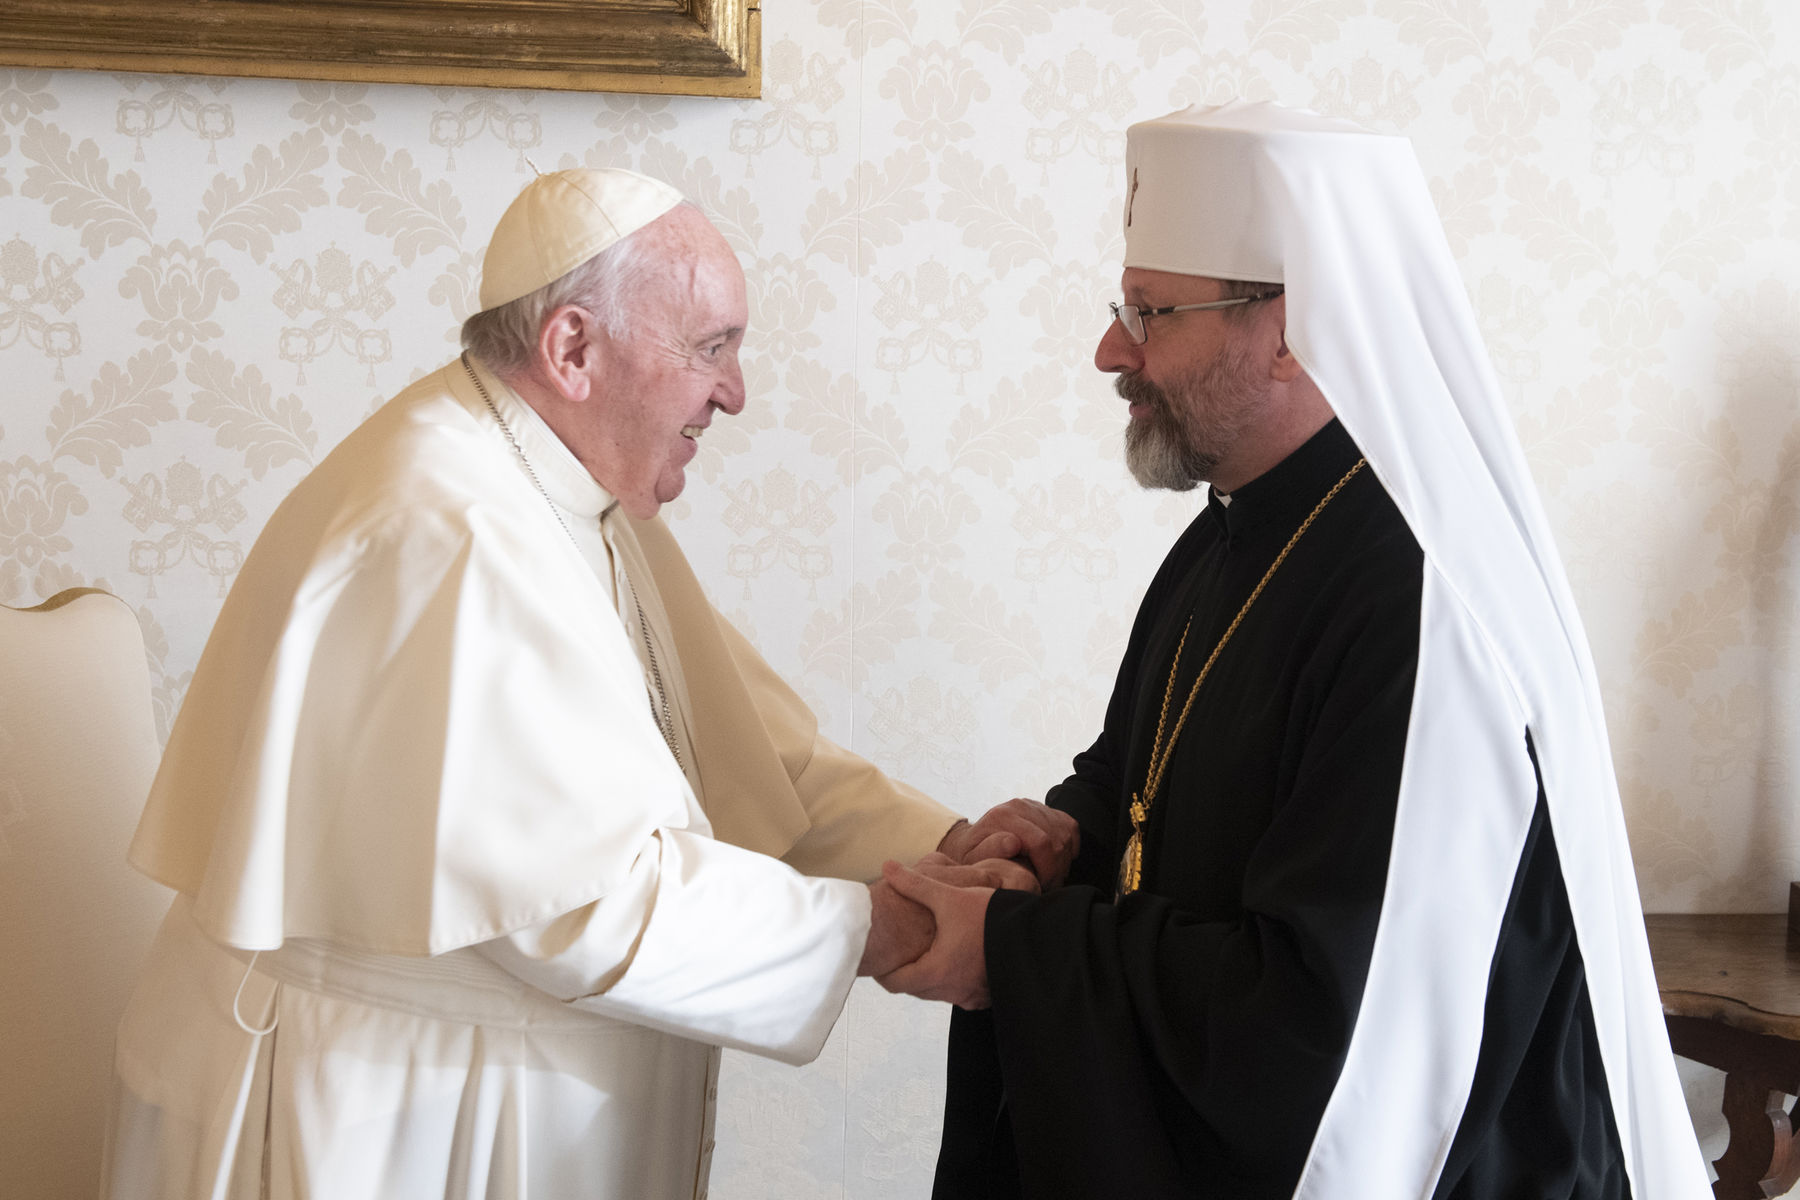  Блаженніший Святослав зустрівся із Святішим Отцем Франциском в Апостольському палаці у Ватикані